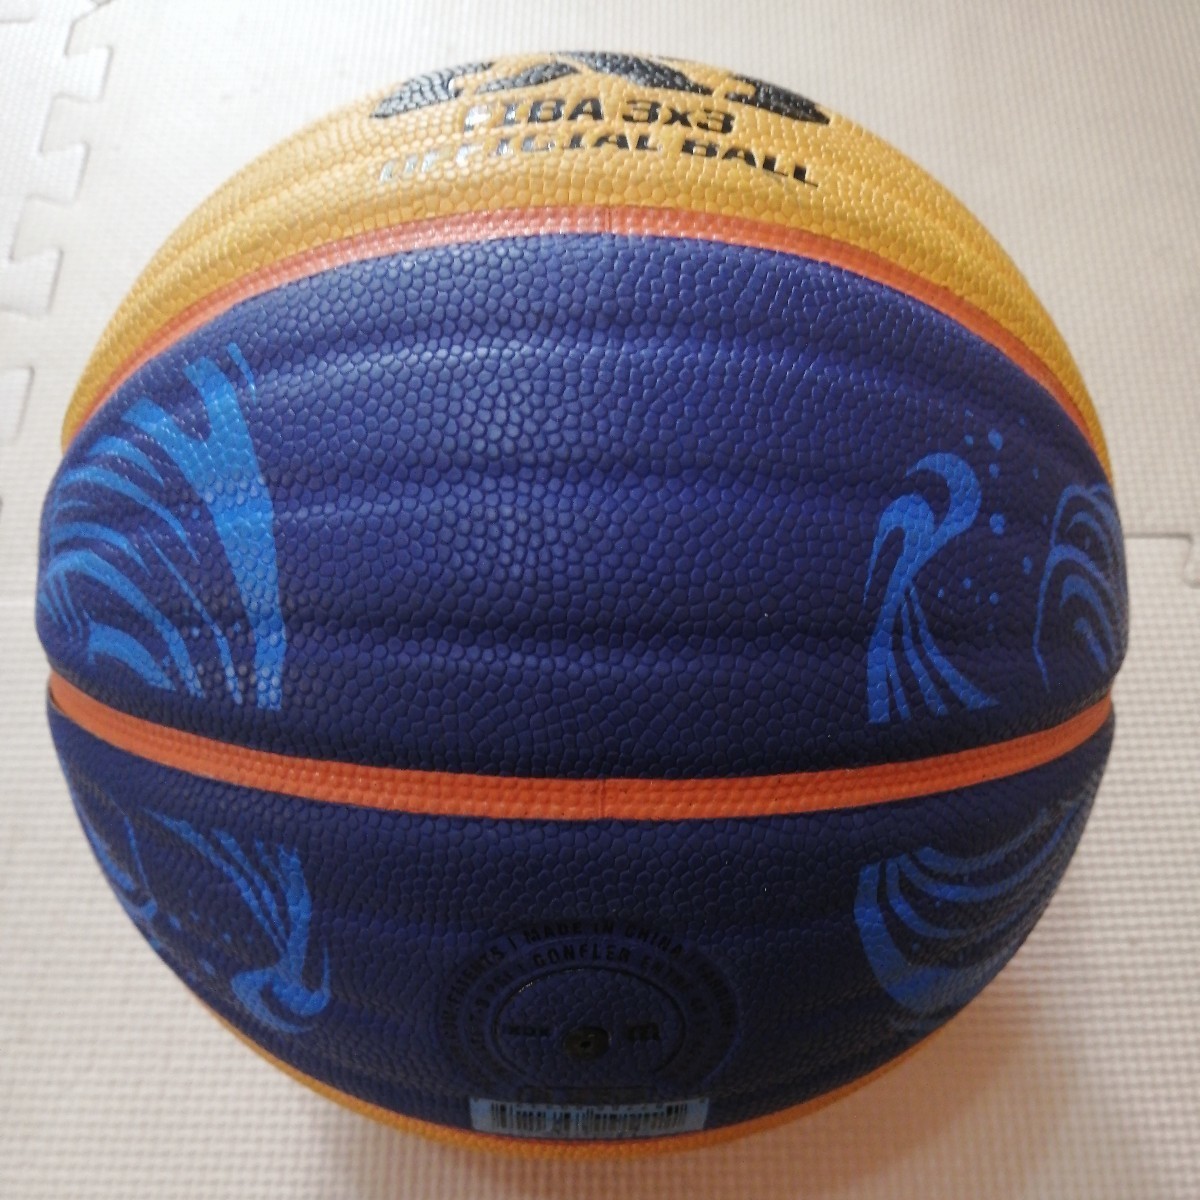 中古 バスケットボール サイズ6号 ウエイト7号 人工皮革製「Wilson FIBA 3X3 OFFICIAL BALL」ウィルソン(検)molten モルテン ミカサ MIKASA